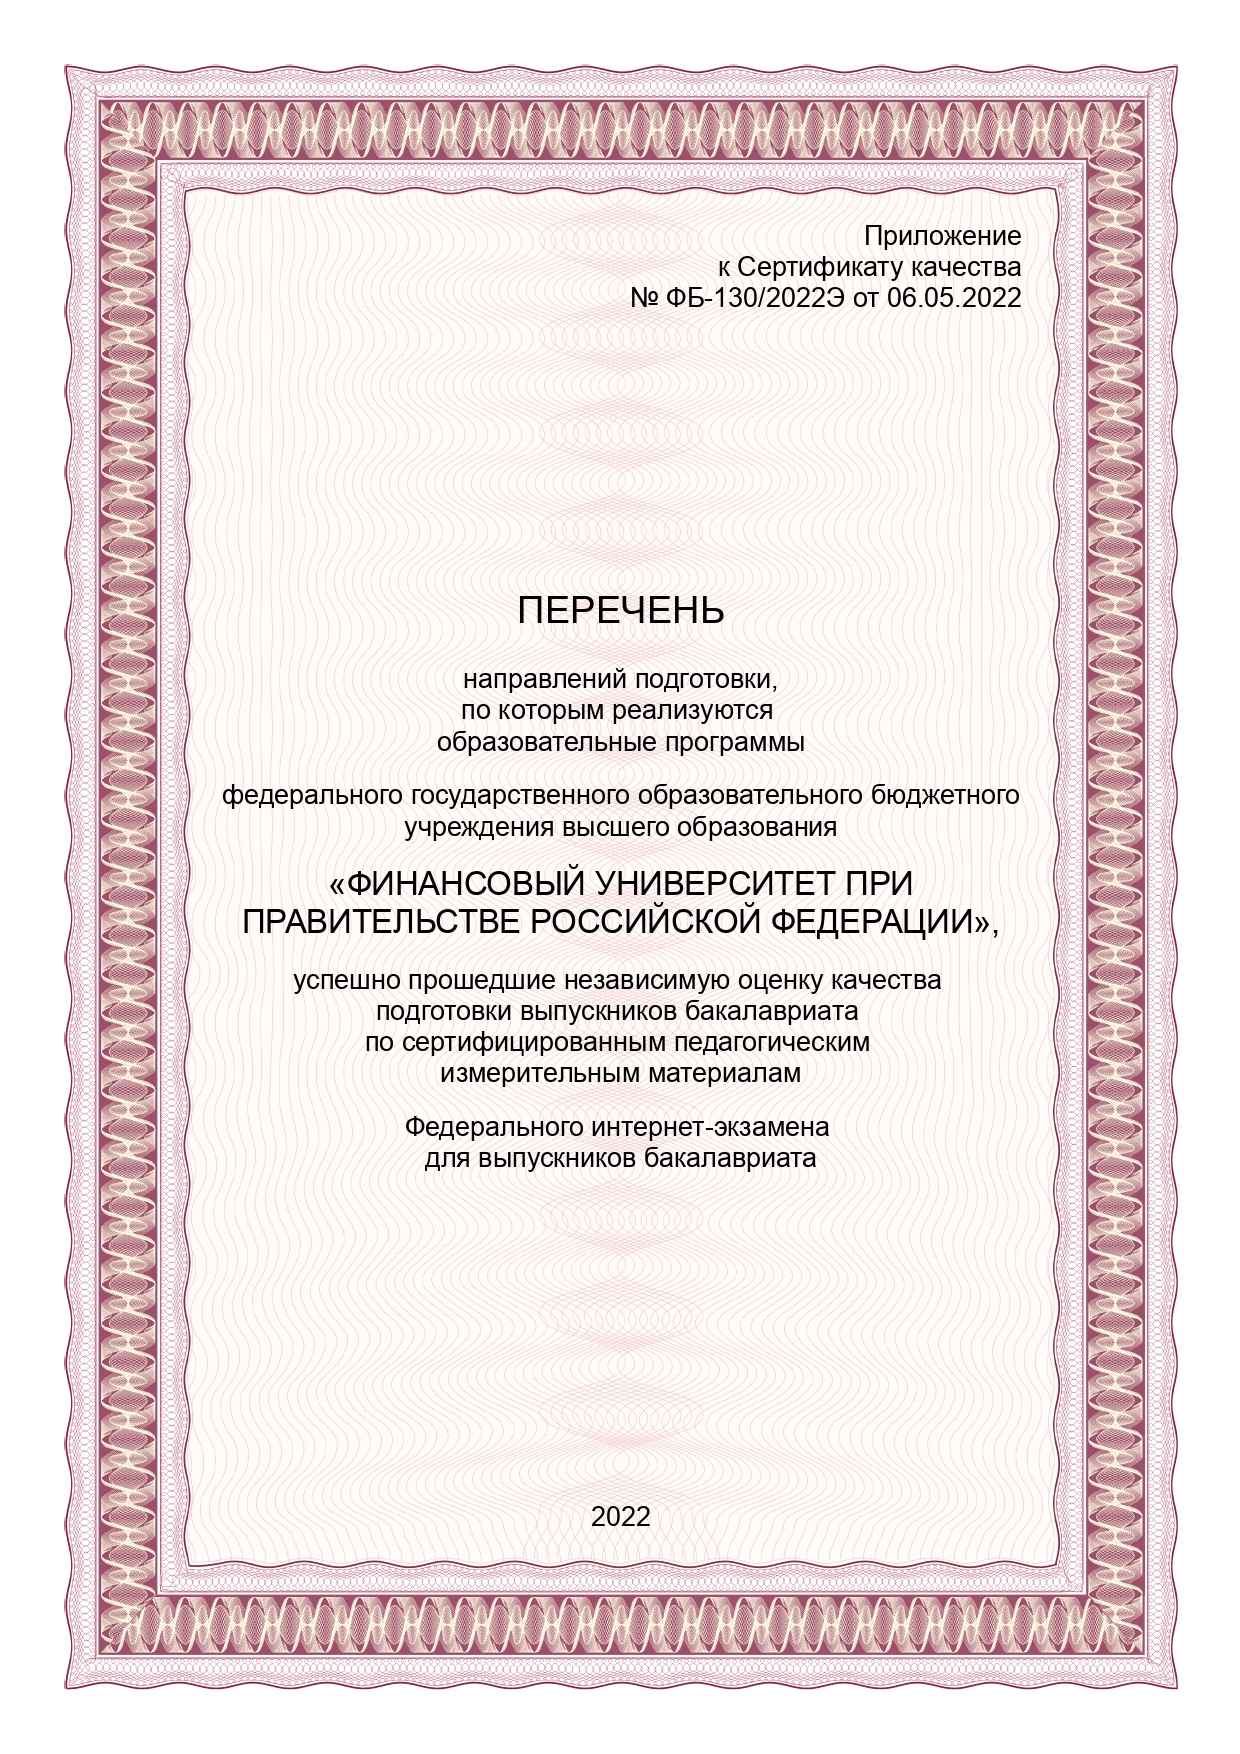 Сертификат качества ФИЭБ 2022_2.jpg